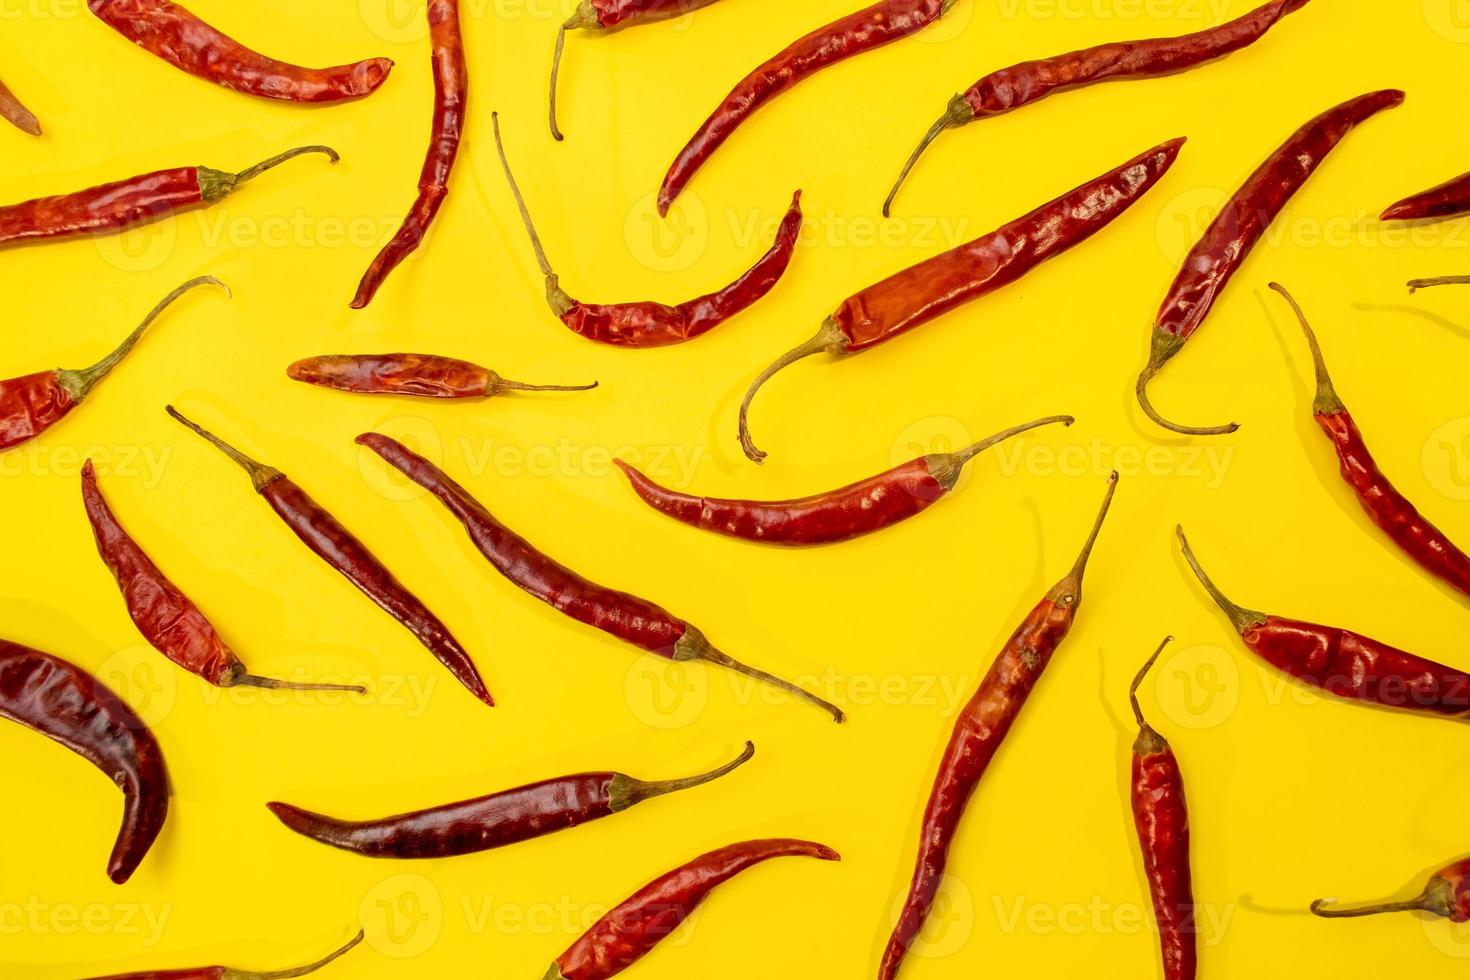 rote chile de arbol chilis, die als muster auf einem lebhaften gelben hintergrund ausgelegt sind foto